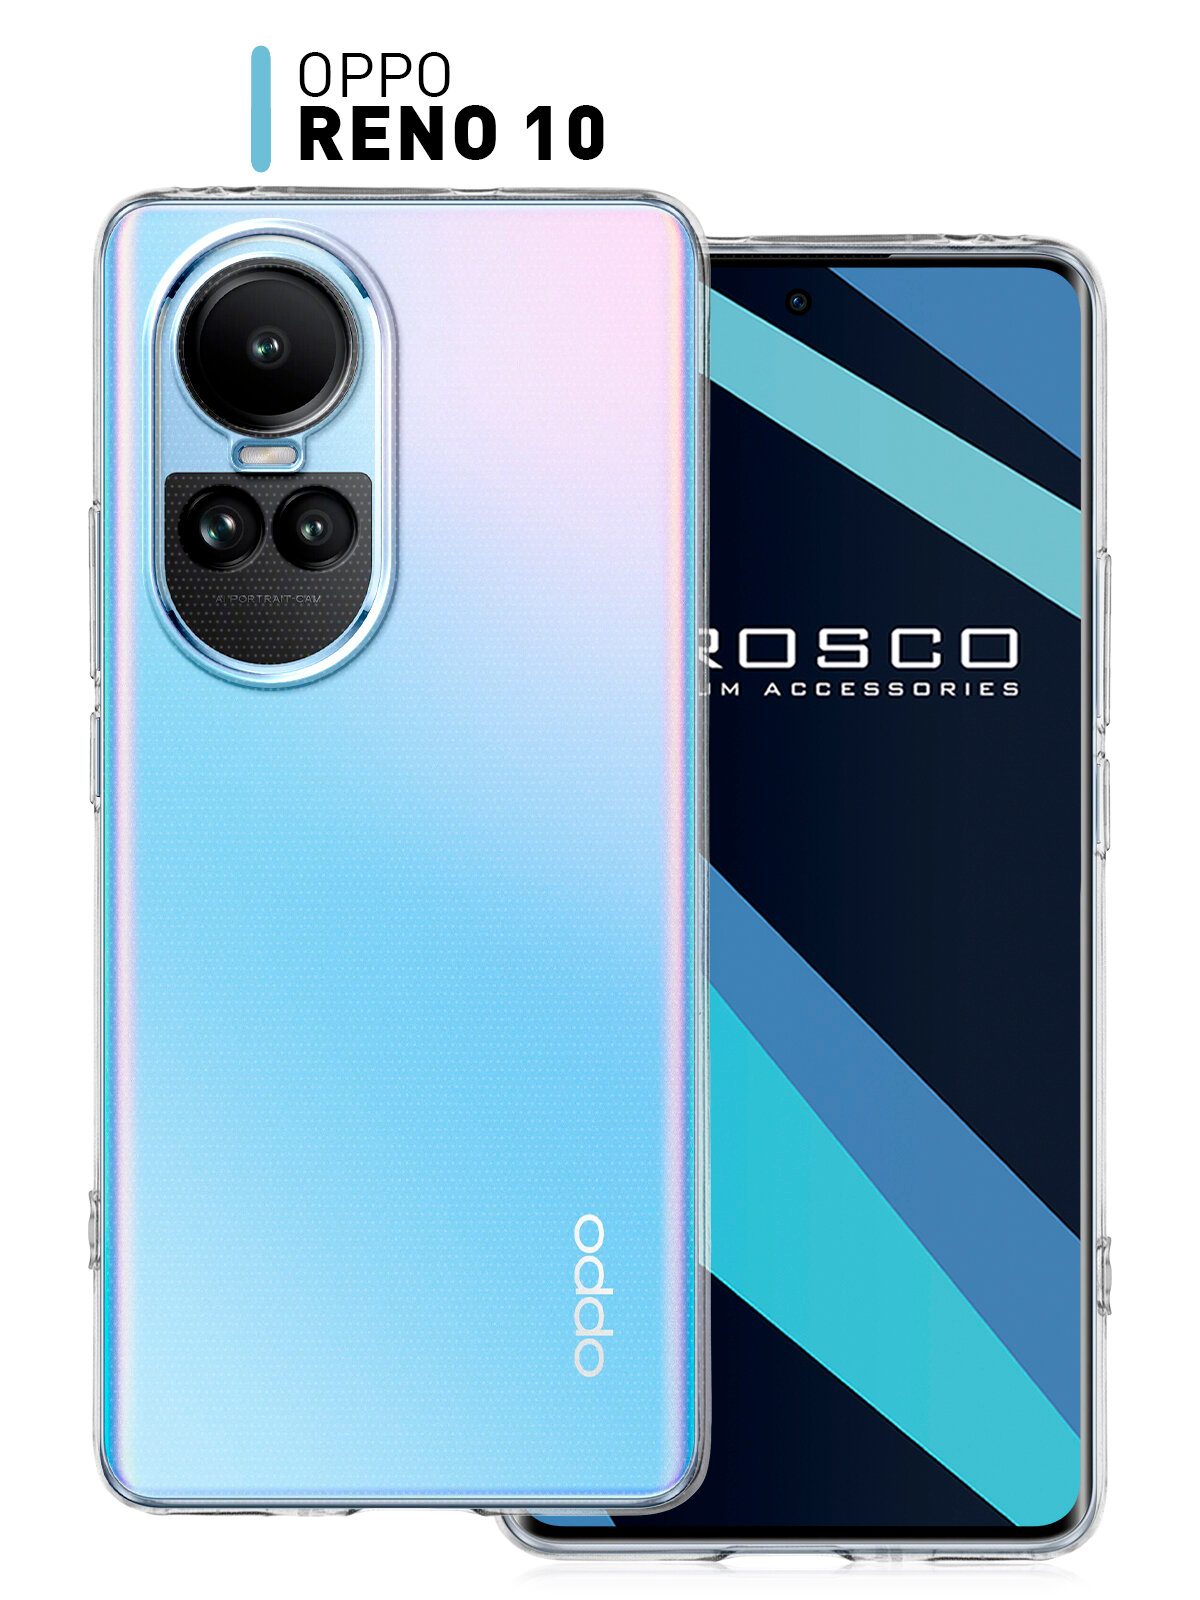 Чехол ROSCO для Oppo Reno 10 (Оппо Рено10, Рено 10) тонкий, с защитой блока камеры, силиконовый чехол, гибкий, прозрачный чехол